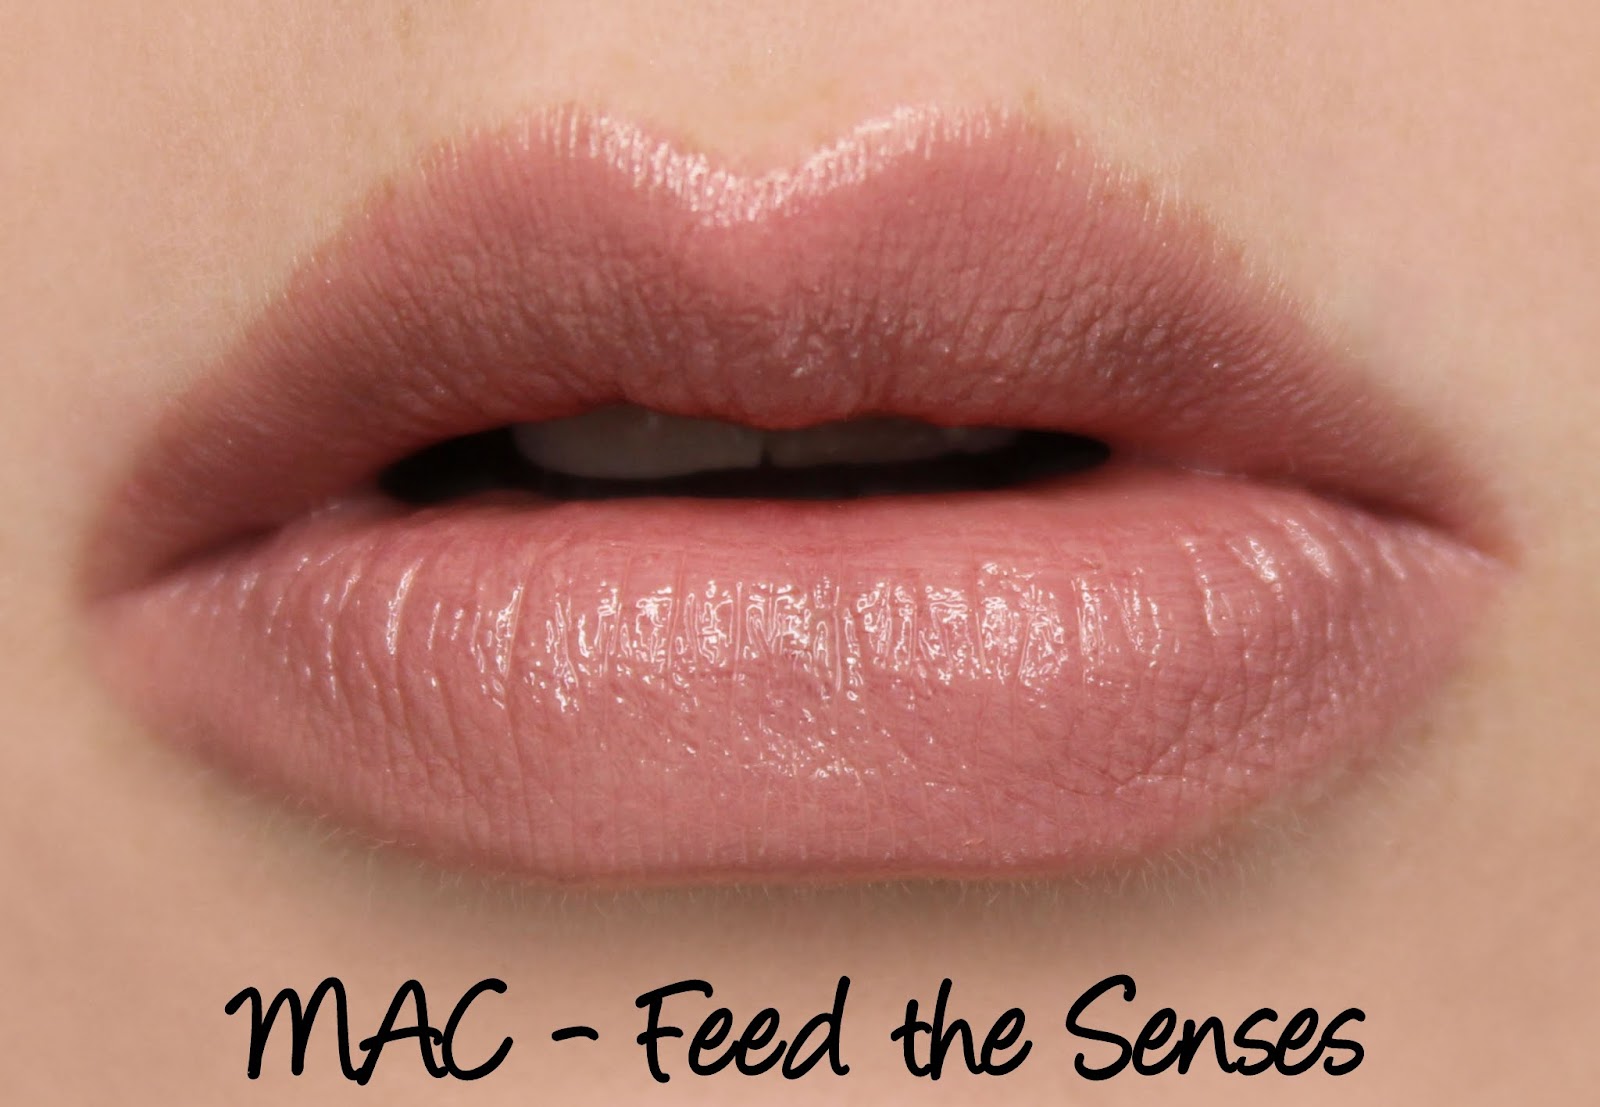 à¸à¸¥à¸à¸²à¸£à¸à¹à¸à¸«à¸²à¸£à¸¹à¸à¸à¸²à¸à¸ªà¸³à¸«à¸£à¸±à¸ mac Lustre lipstick Feed The Senses